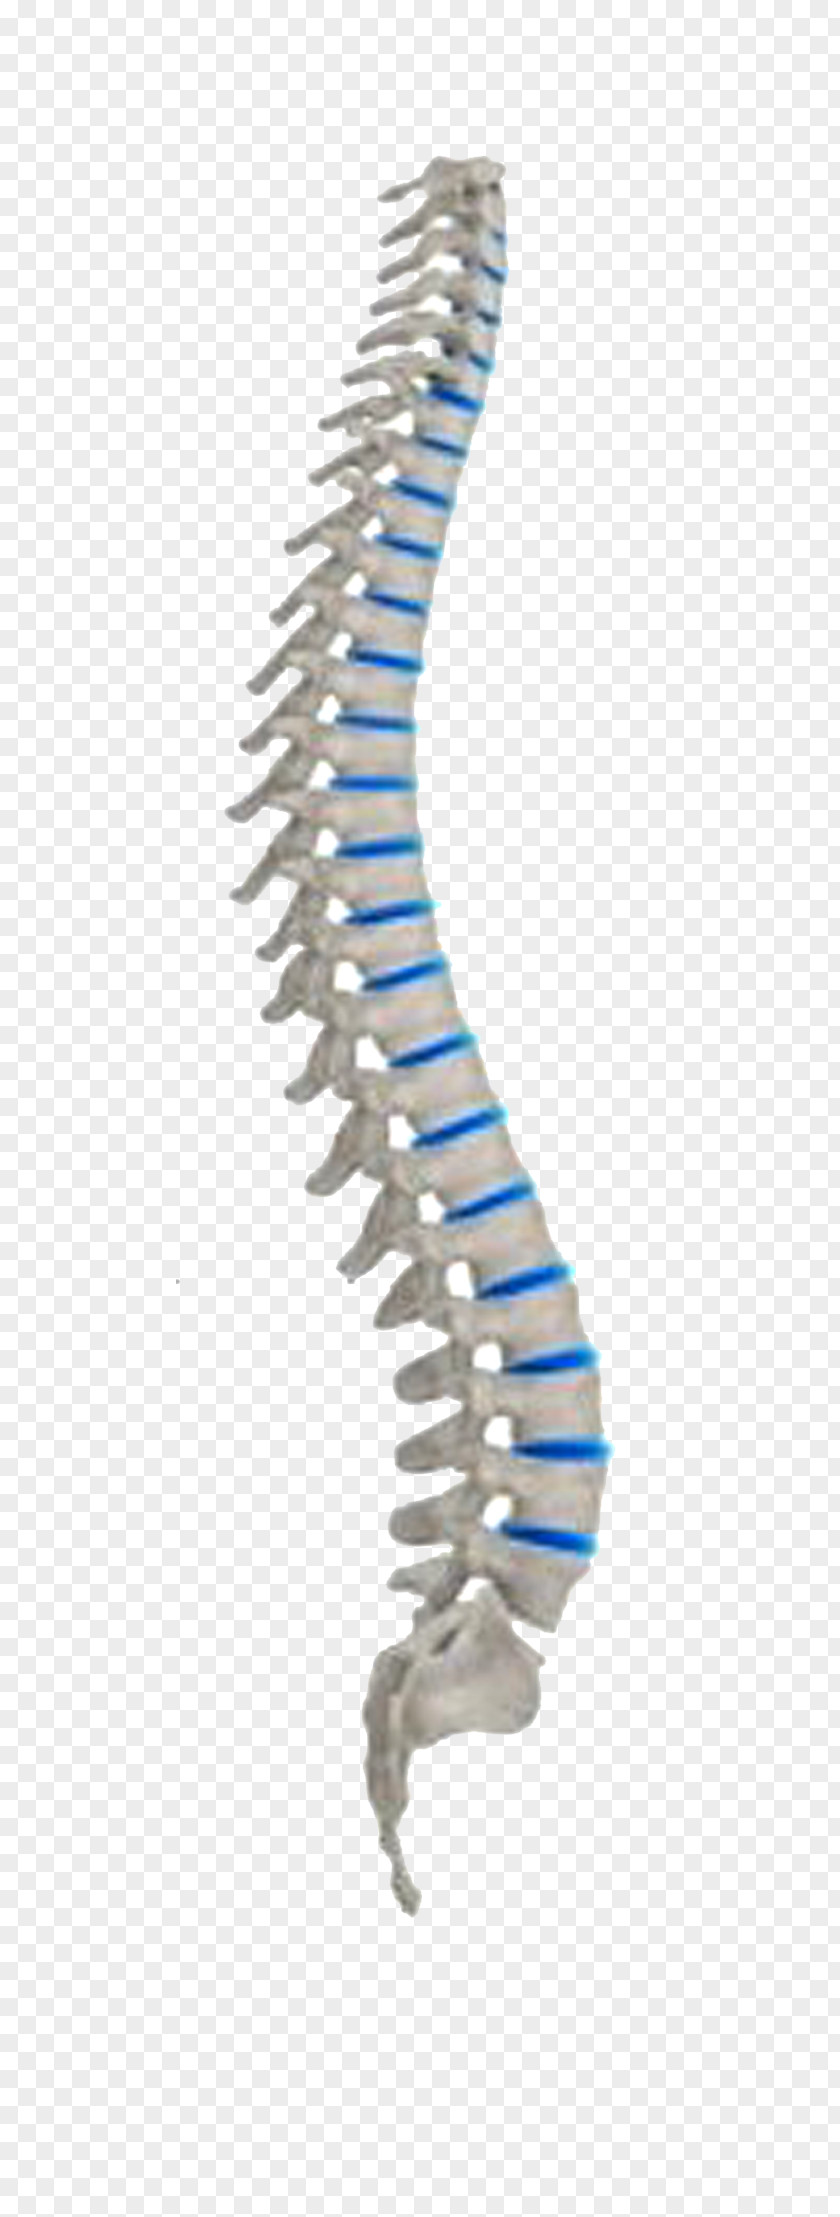 Vertebral Column Neutral Spine Spinal Cord Human Body Nervous System PNG